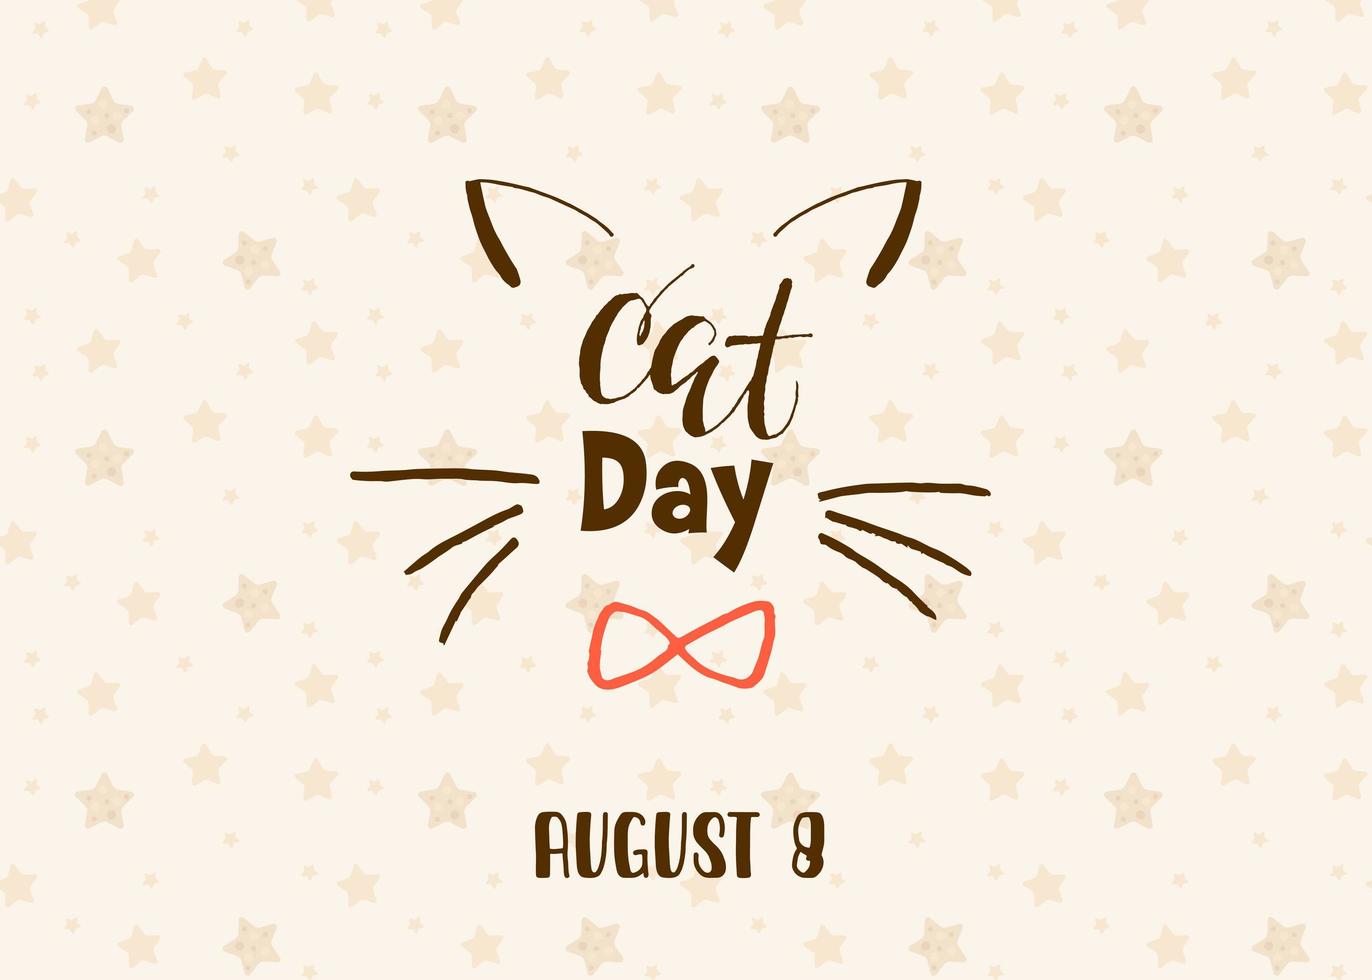 giornata mondiale del gatto. vacanza internazionale. illustrazione vettoriale. scritte su sfondo beige con stelle. vettore